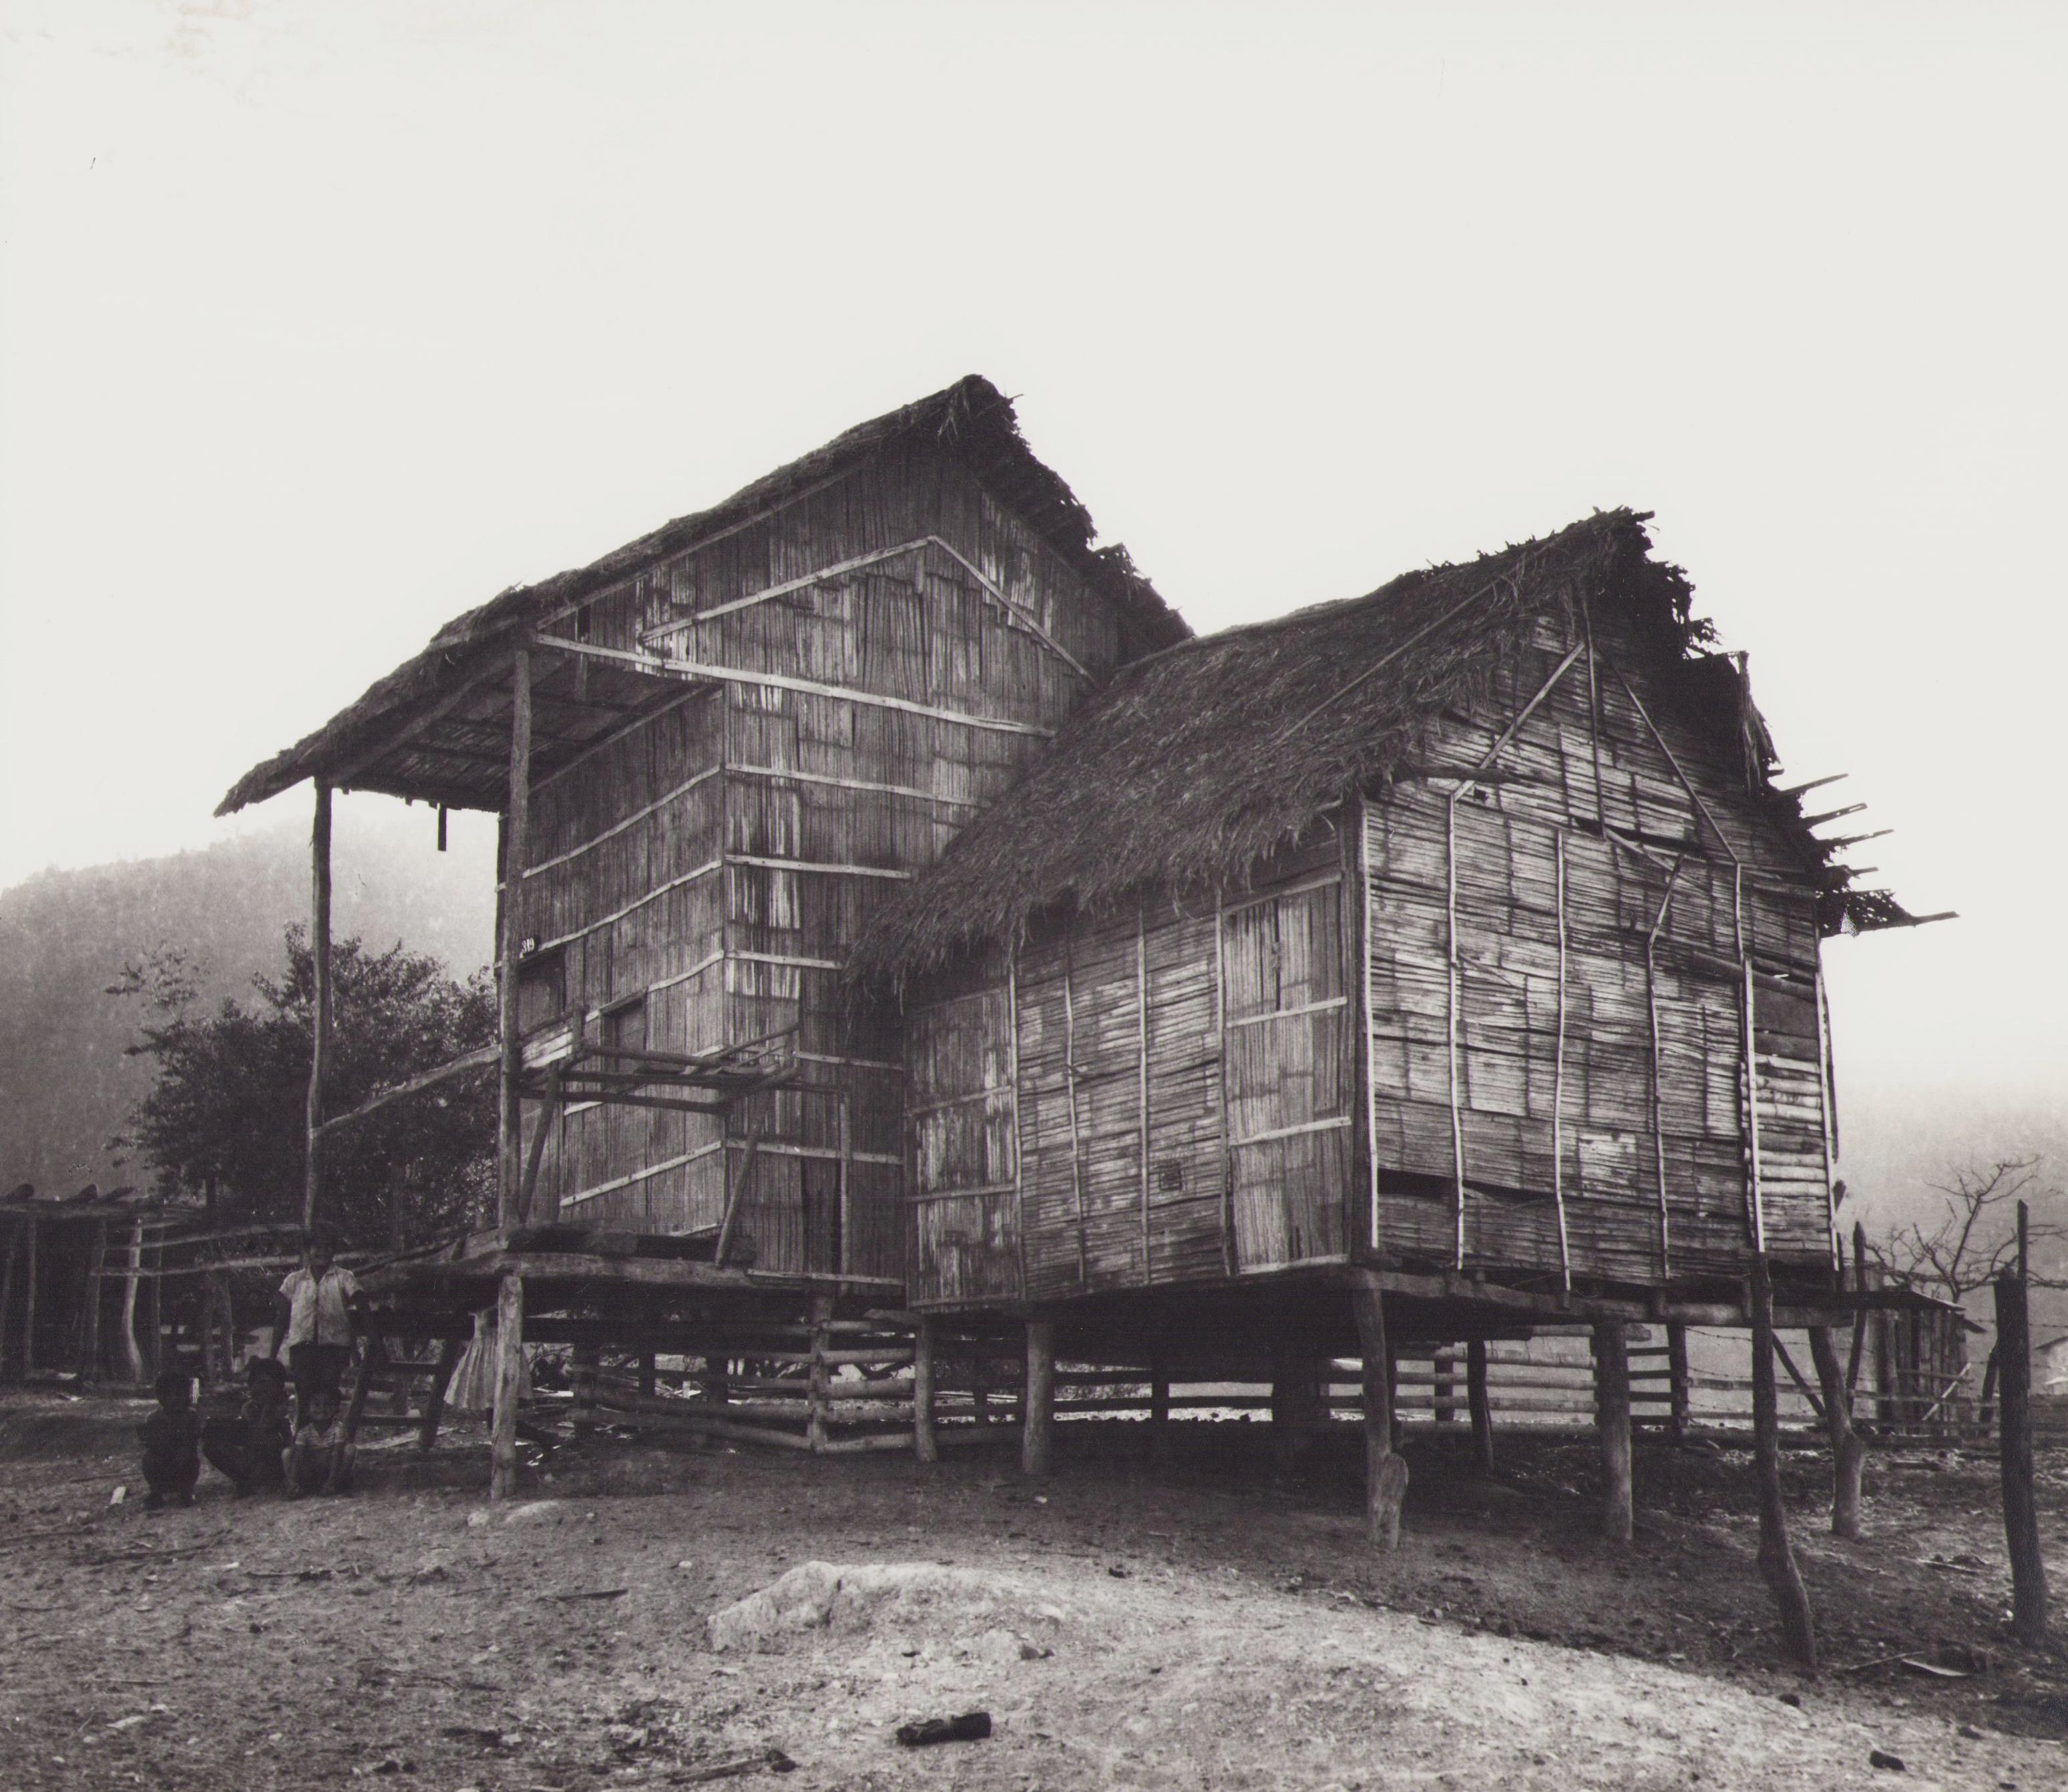 Black and White Photograph Hanna Seidel - Équateur, Maison, photographie en noir et blanc, années 1960, 23,5 x 26,7 cm